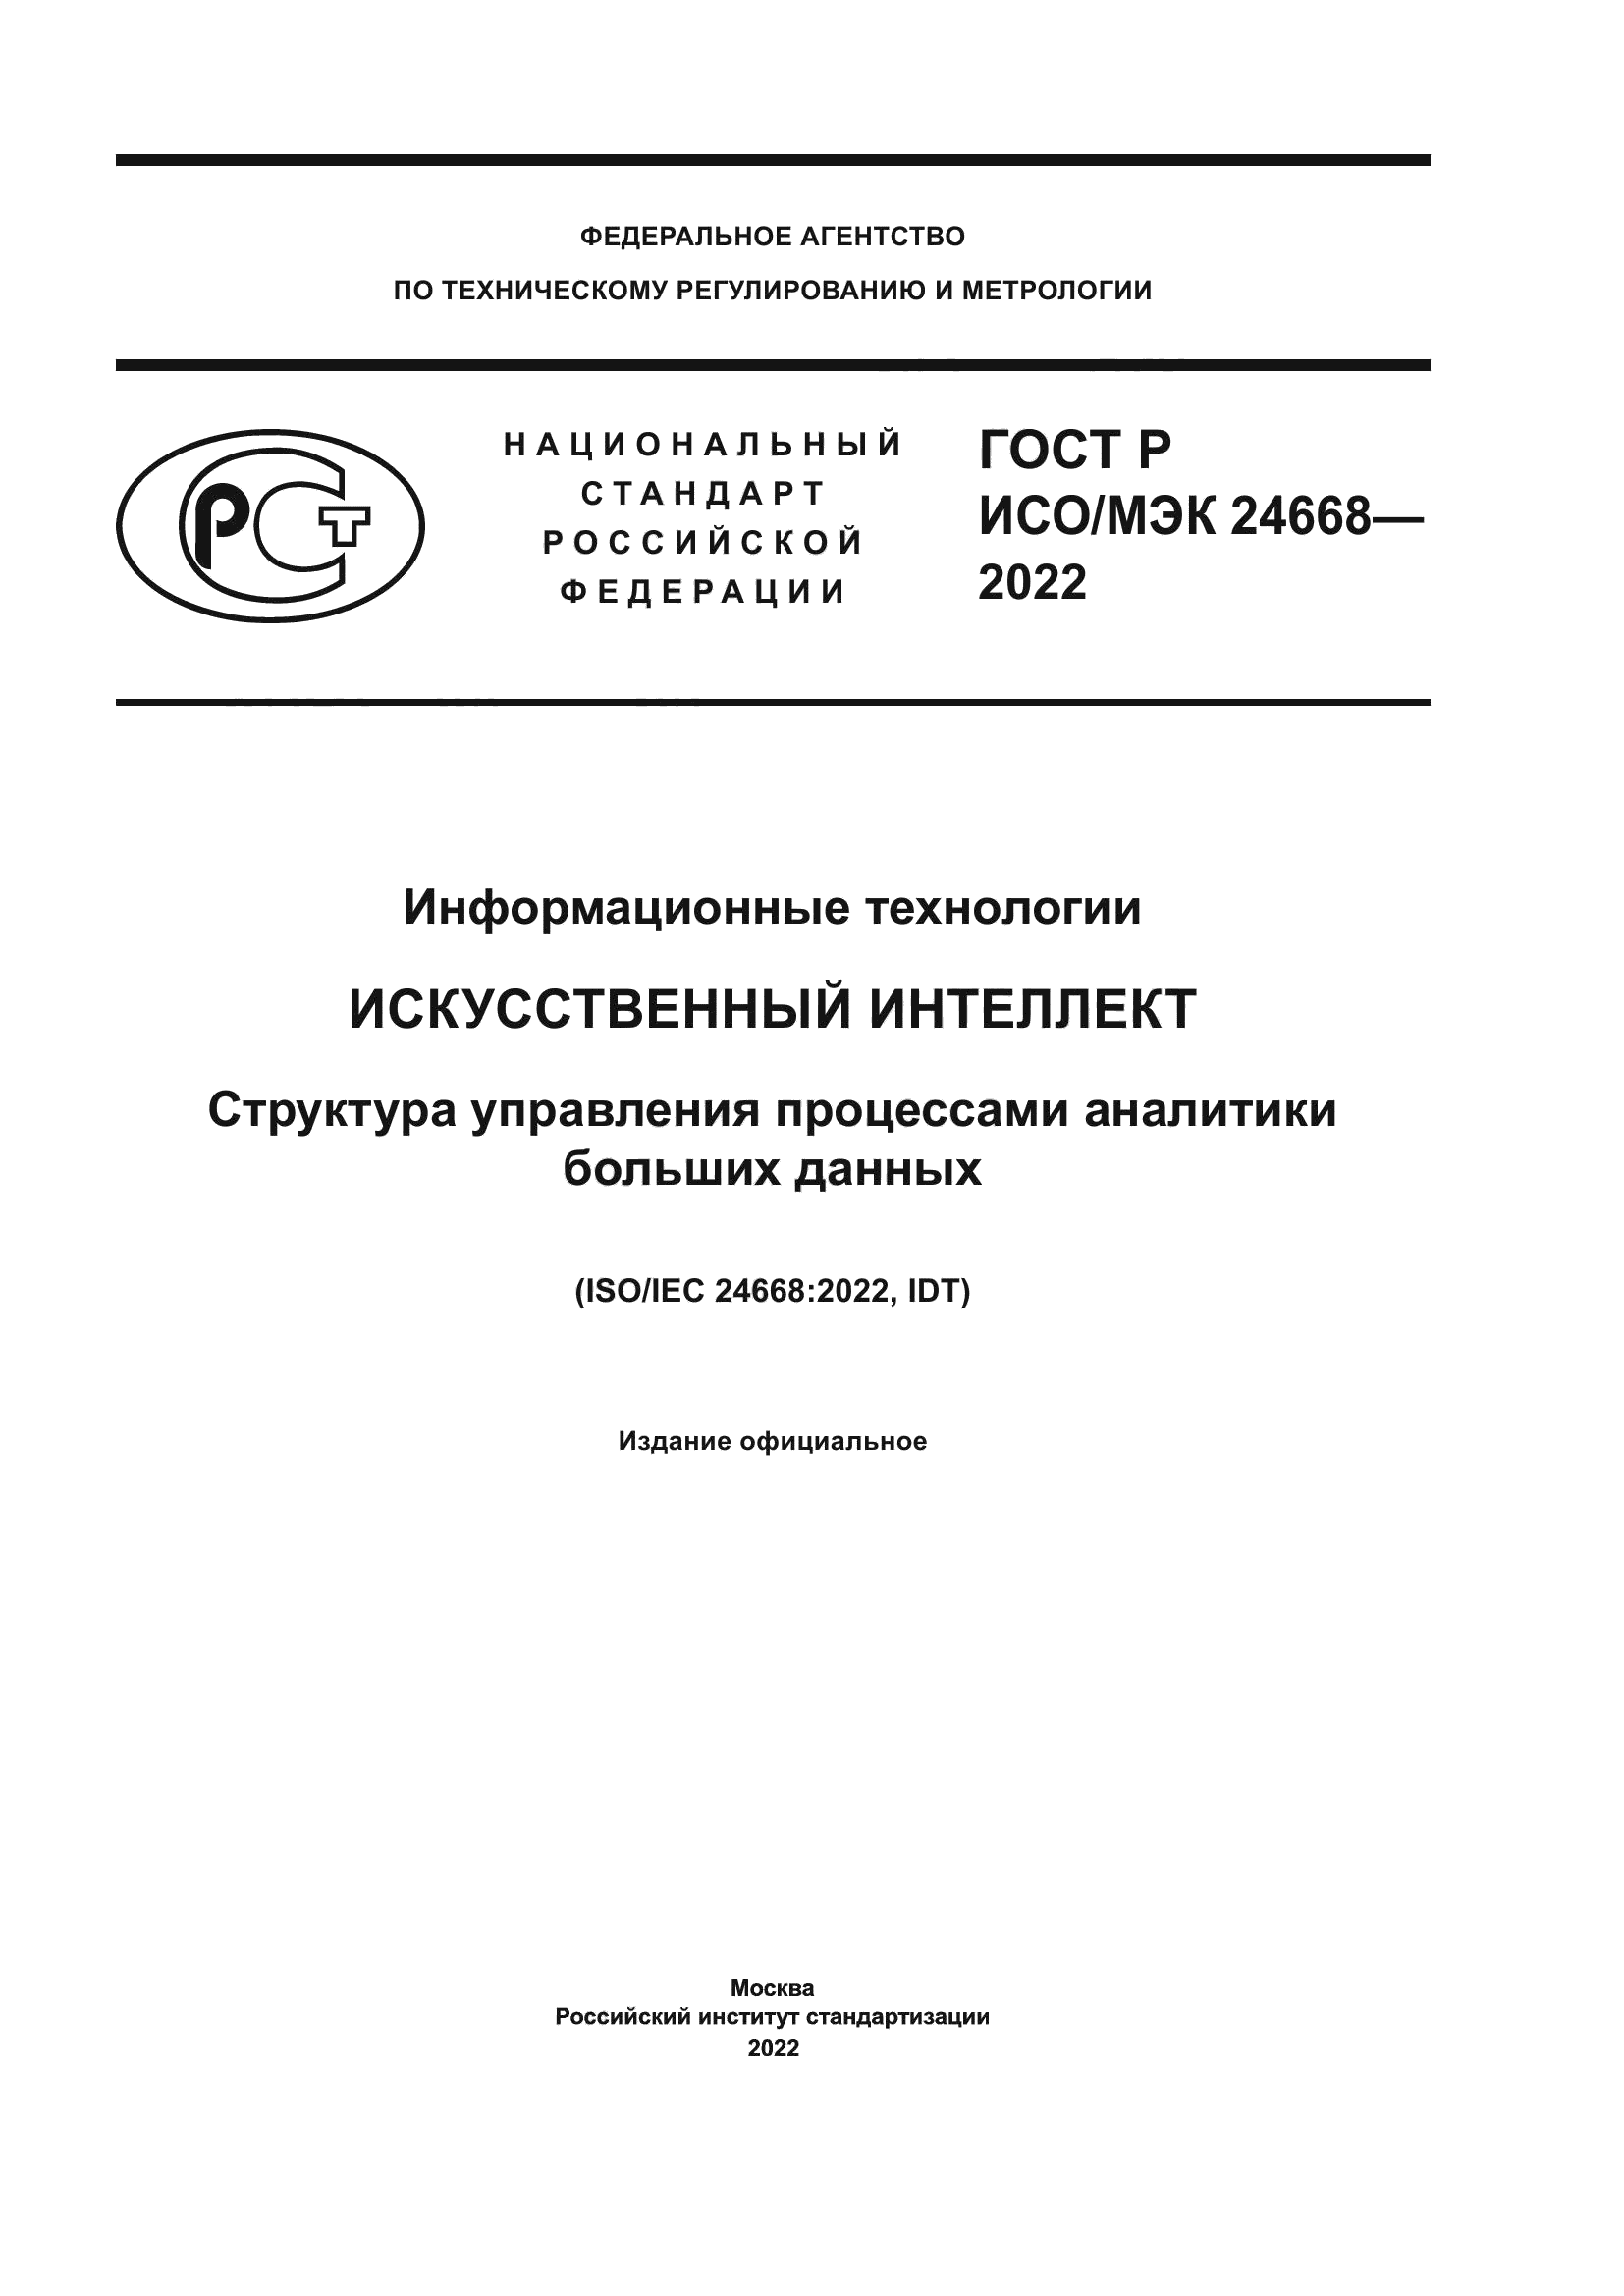 ГОСТ Р ИСО/МЭК 24668-2022